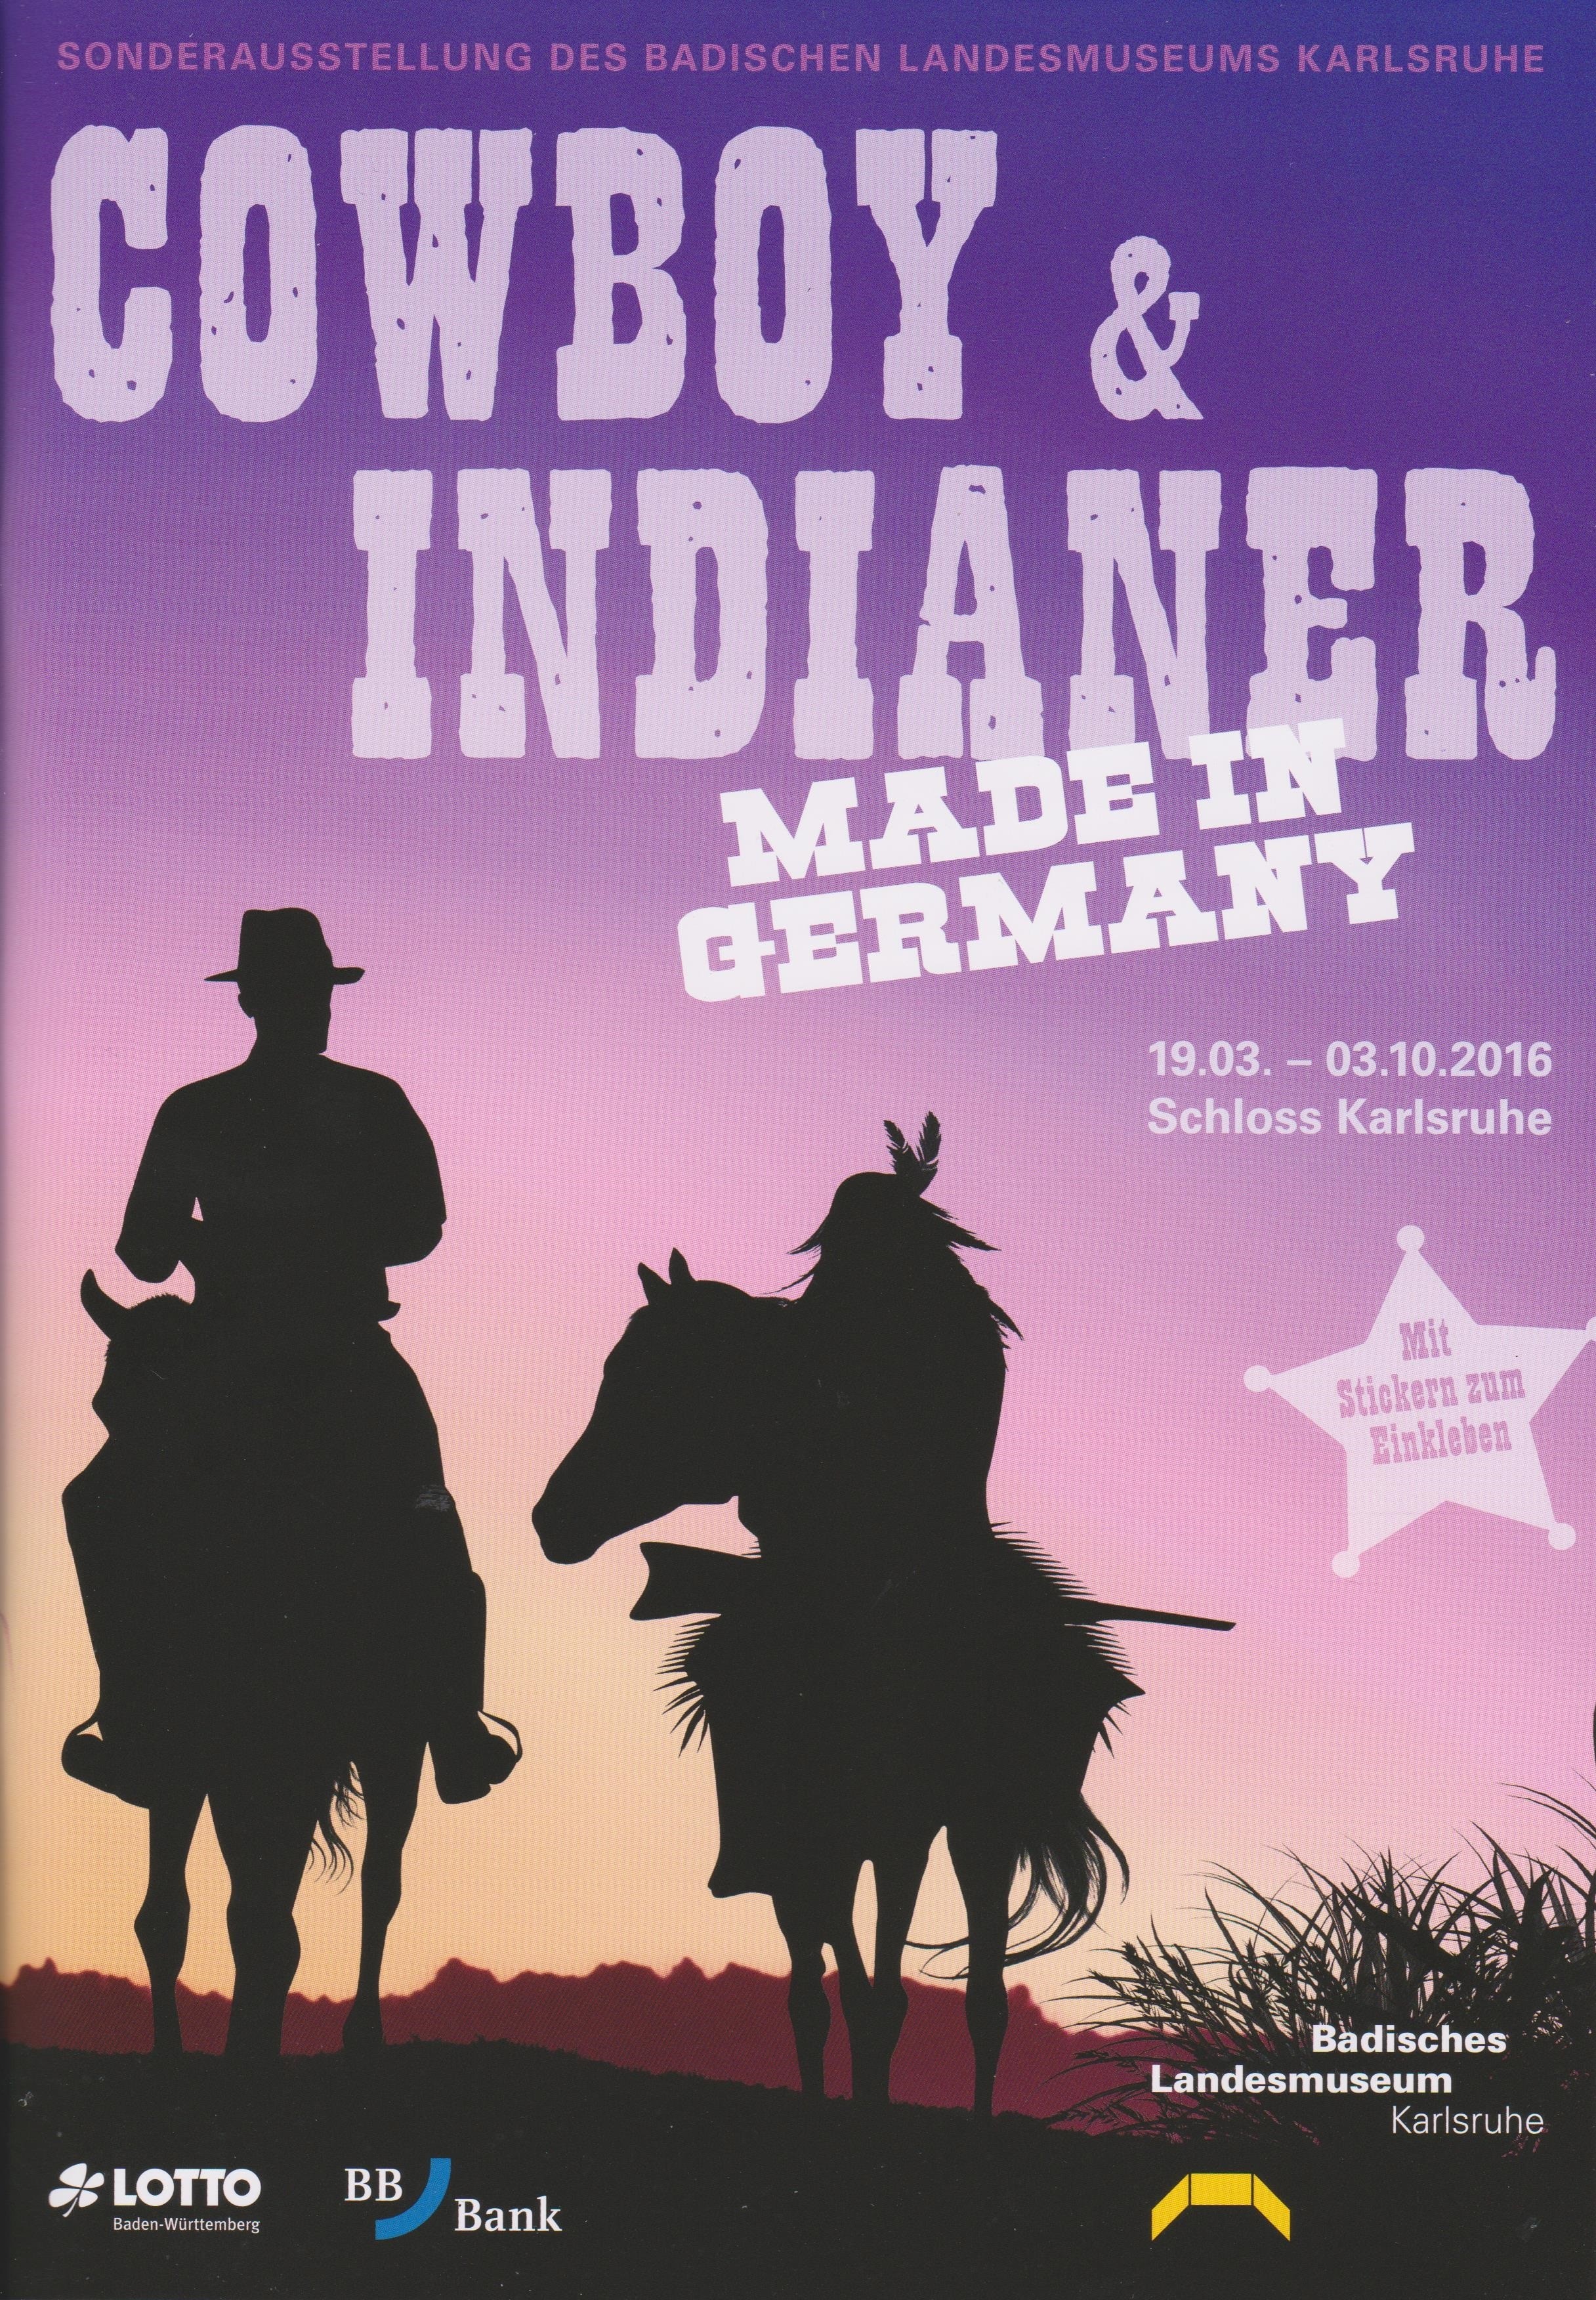 Cowboy & Indianer Stickerheft